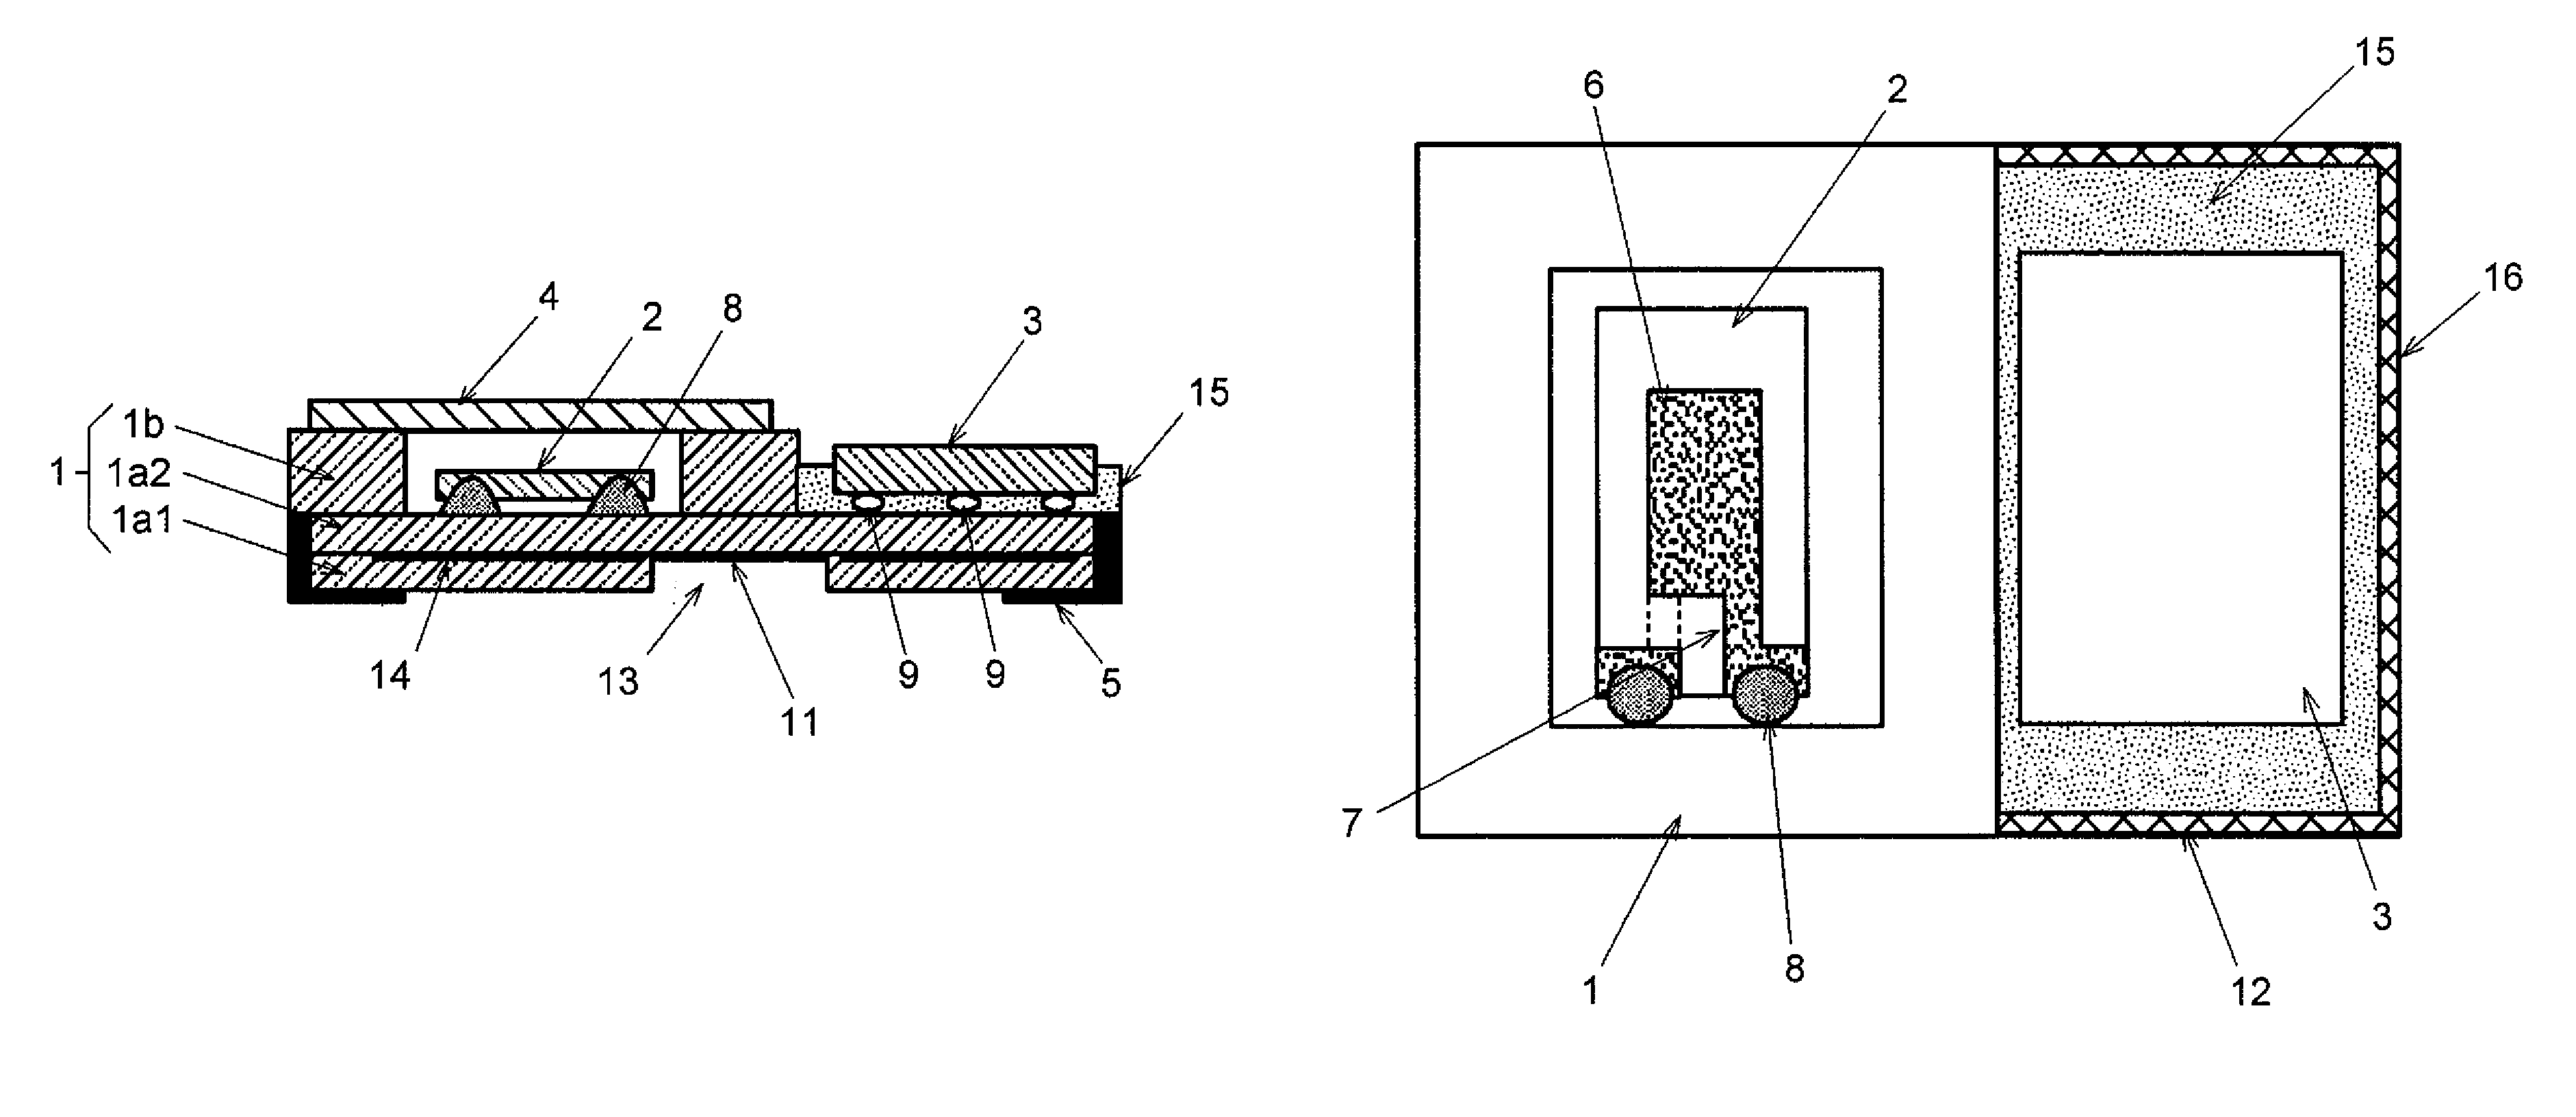 Surface-mount type crystal oscillator